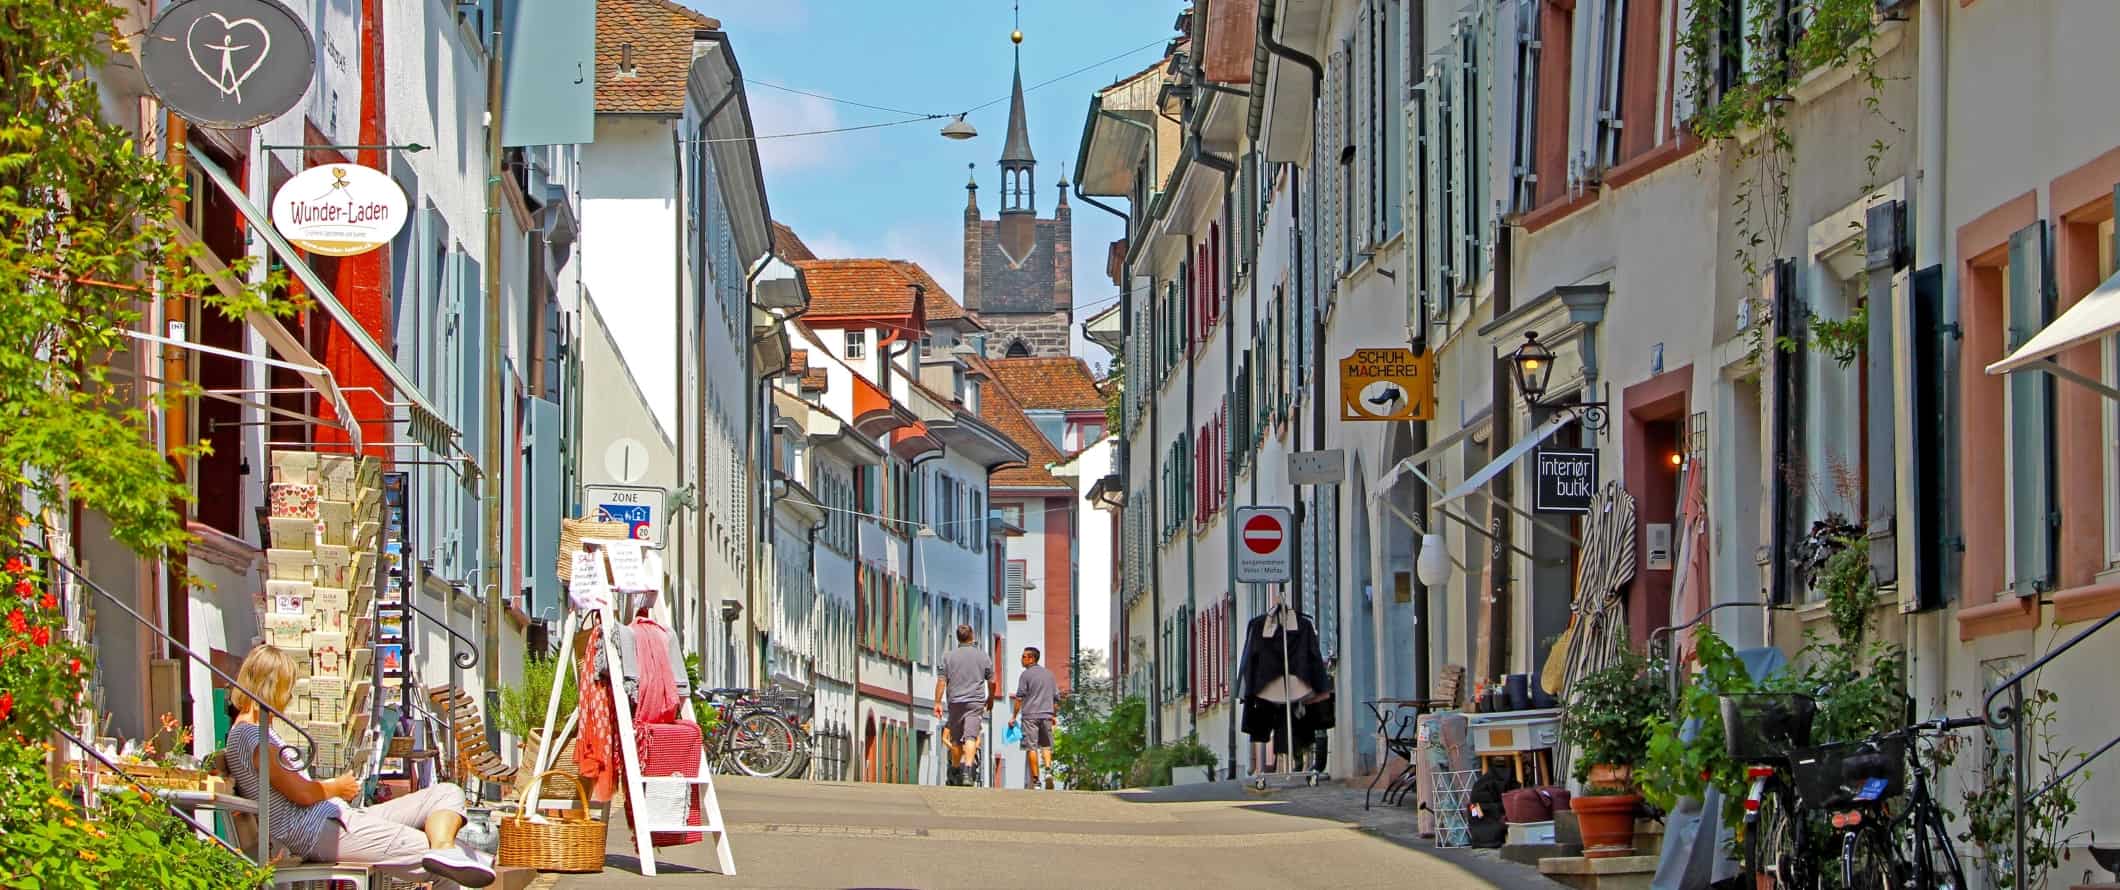 Rua com edifícios brancos com persianas pintadas de cores vivas no centro histórico de Basileia, Suíça